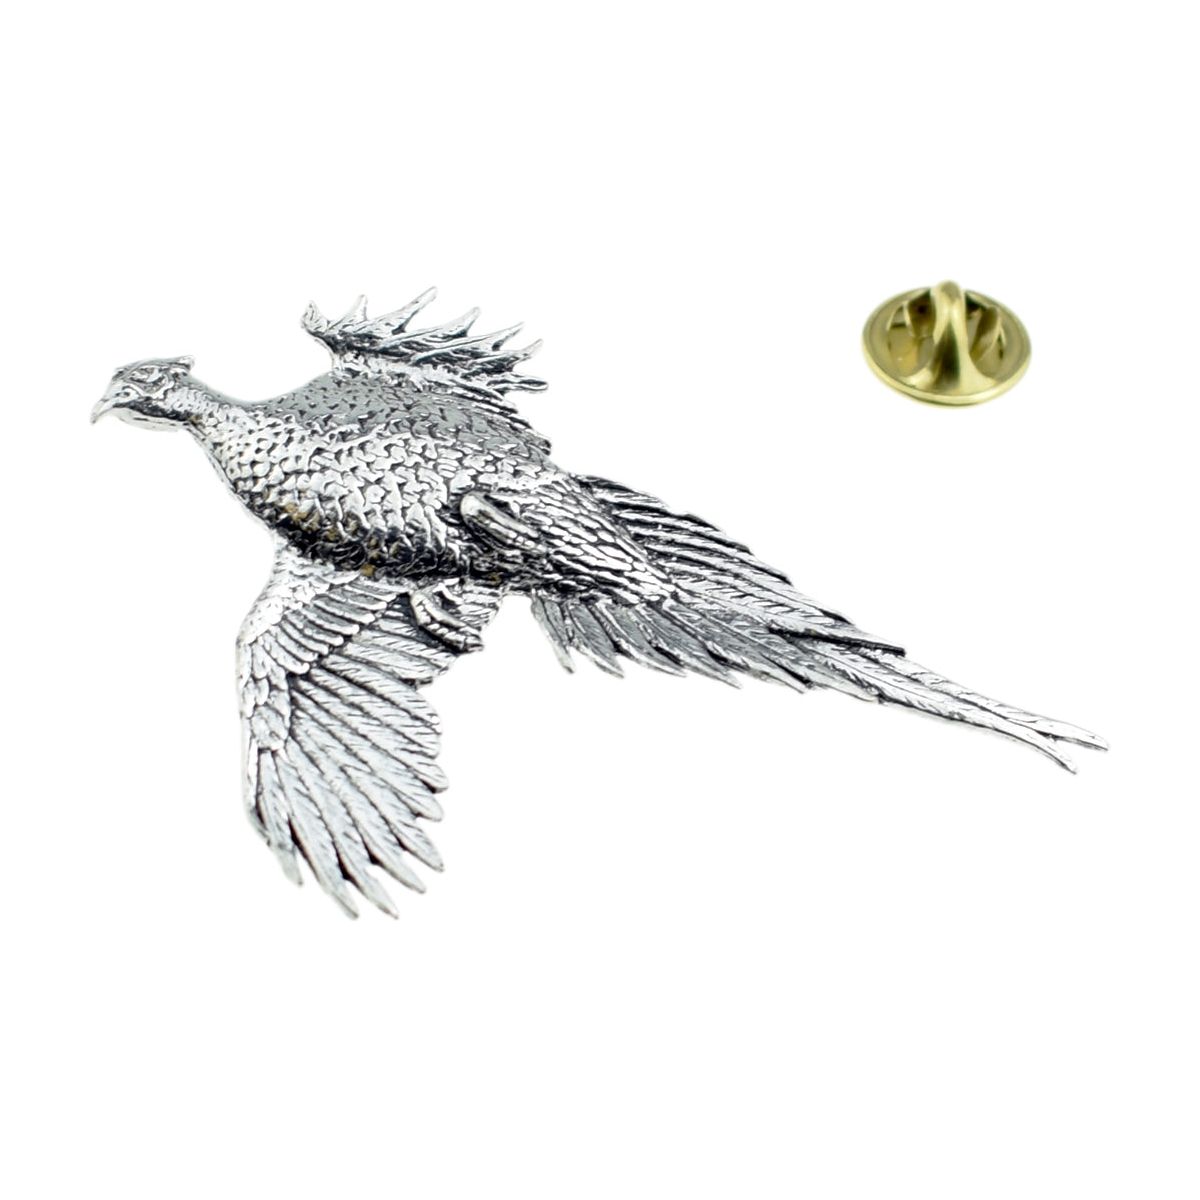 Large Pheasant English Pewter Lapel Pin Badge - Ashton and Finch